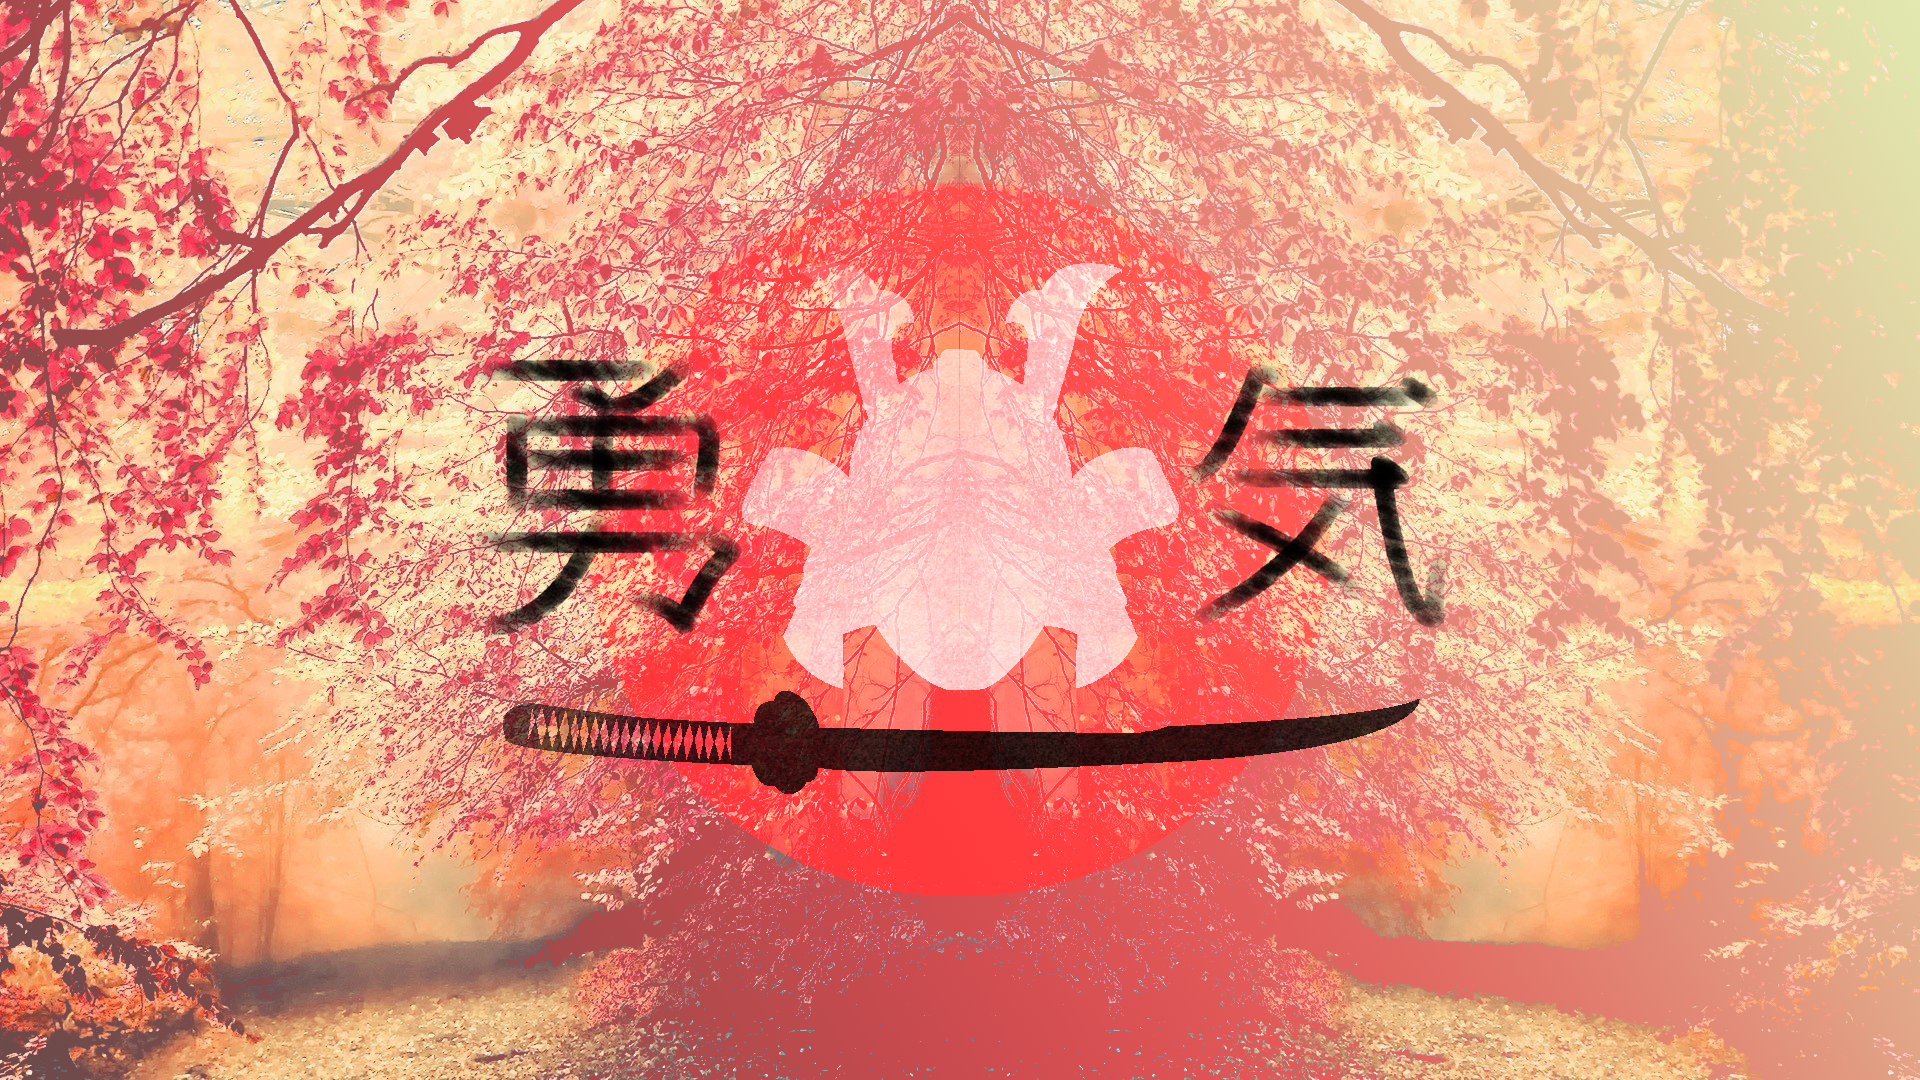 #kanji, #japan, #samurai, #pink, Wallpaper - Fond D Ecran Hd Animé Windows 8 , HD Wallpaper & Backgrounds